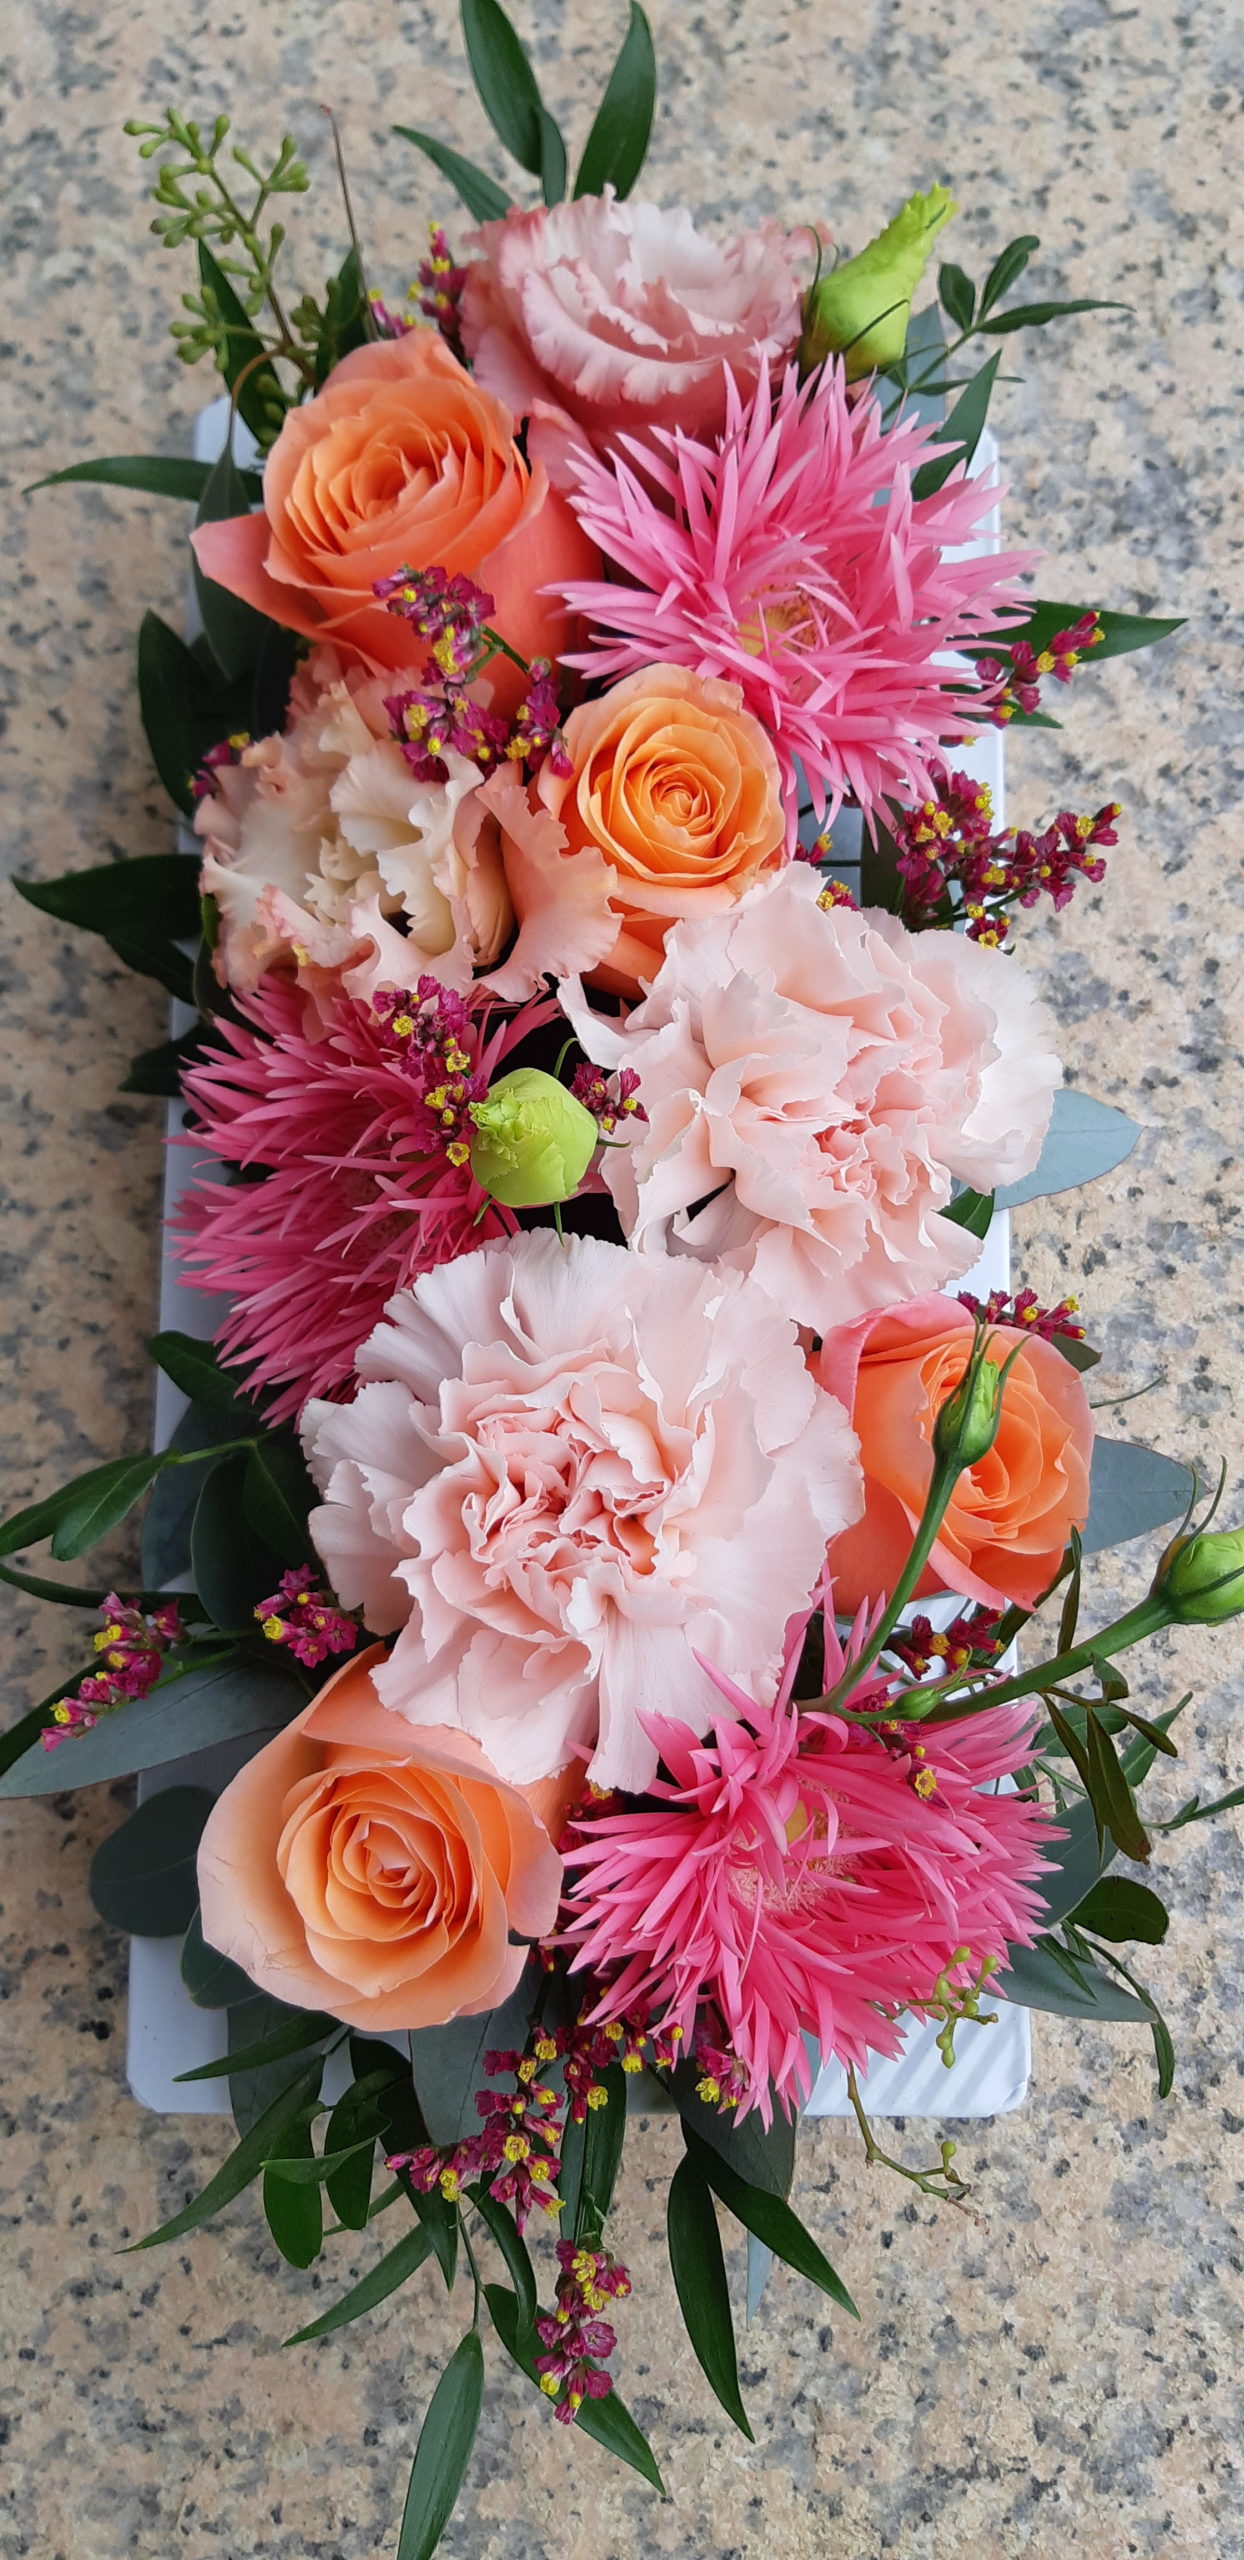 centre de table fleurs oeillet rose germini rose anniversaire fleuriste woippy effleurs